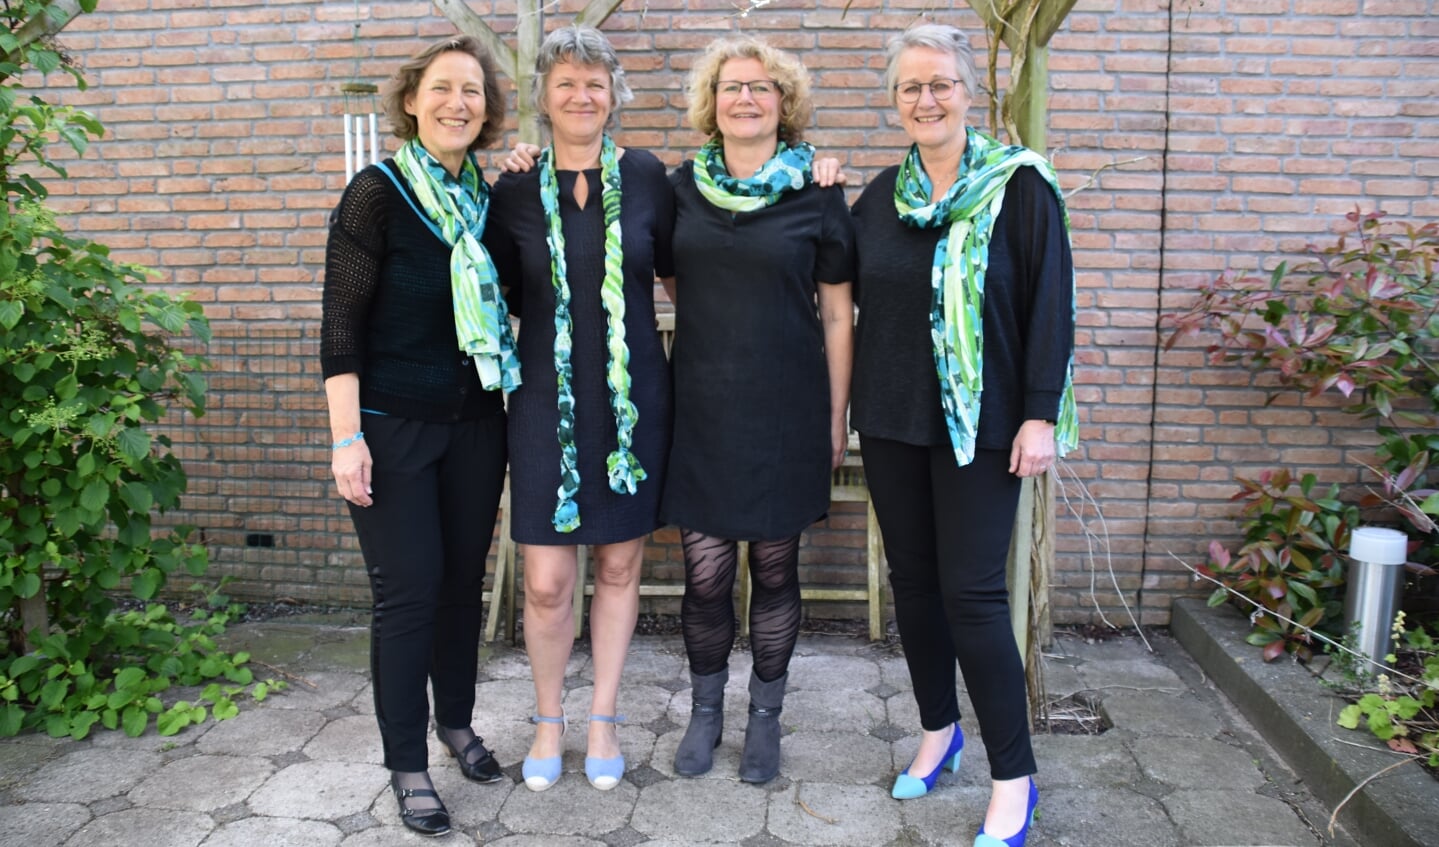 Het vrouwenkwartet Cantado bestaat uit vier zussen Adolfsen.